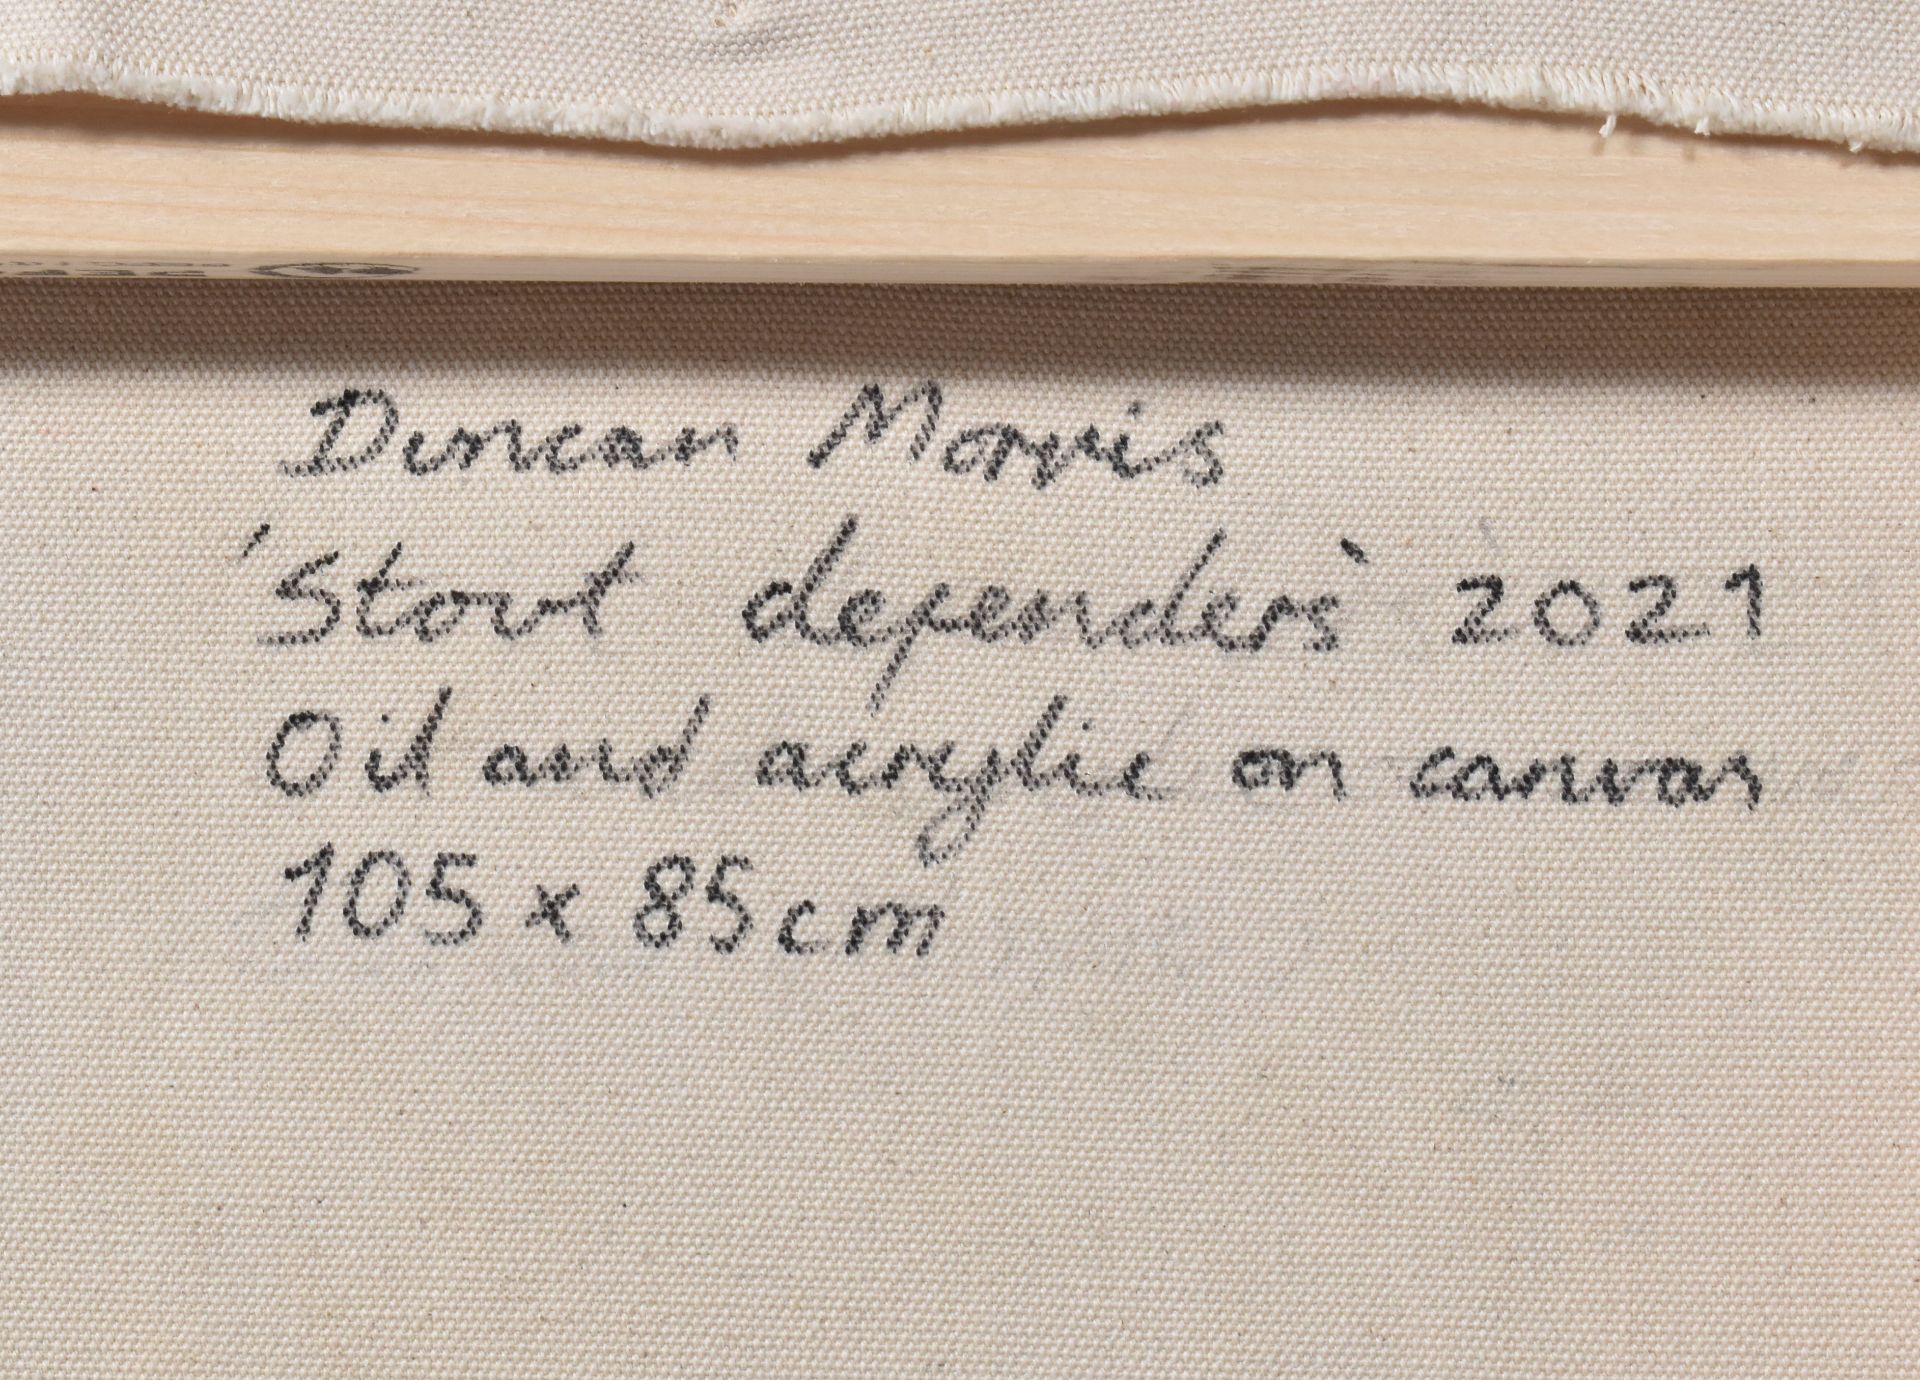 DUNCAN MORRIS (B.1980) - STOUT DEFENDERS, 2021 - Image 4 of 4